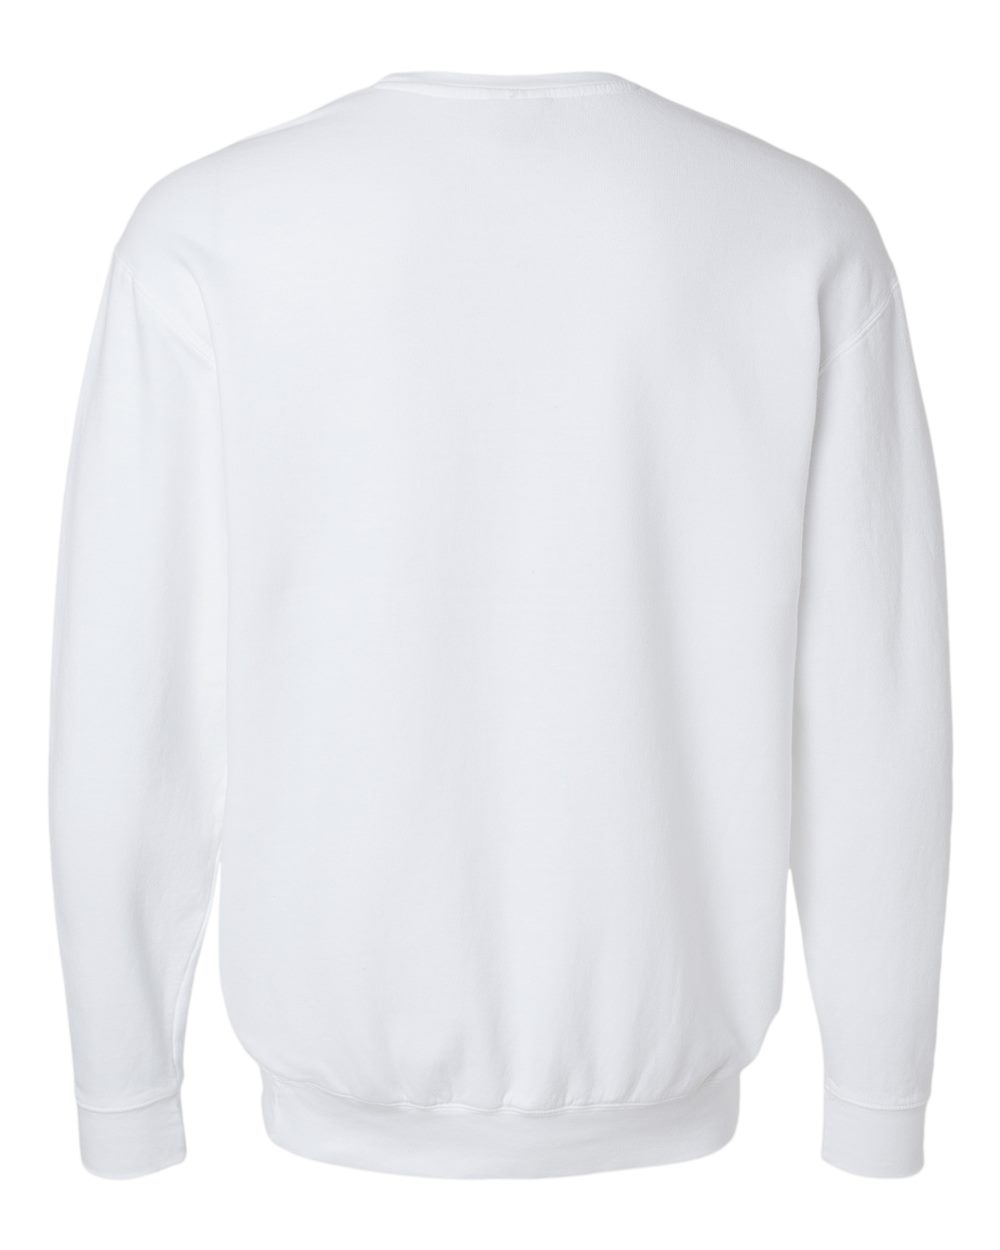 Comfort Colors® 1466 Lightweight Adult Crewneck Sweatshirt - One Stop